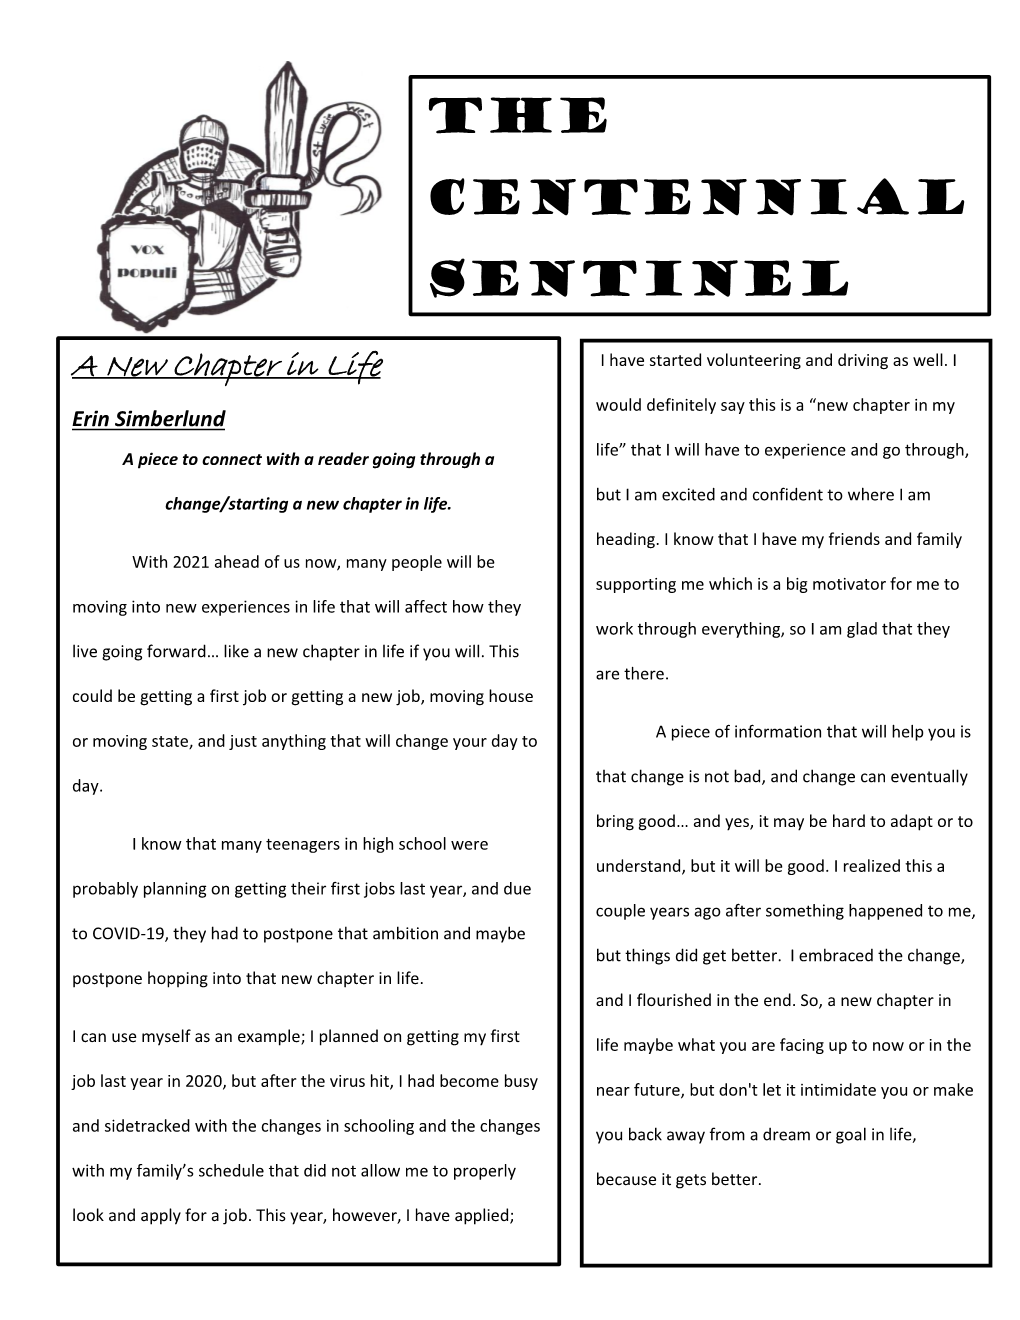 The Centennial Sentinel